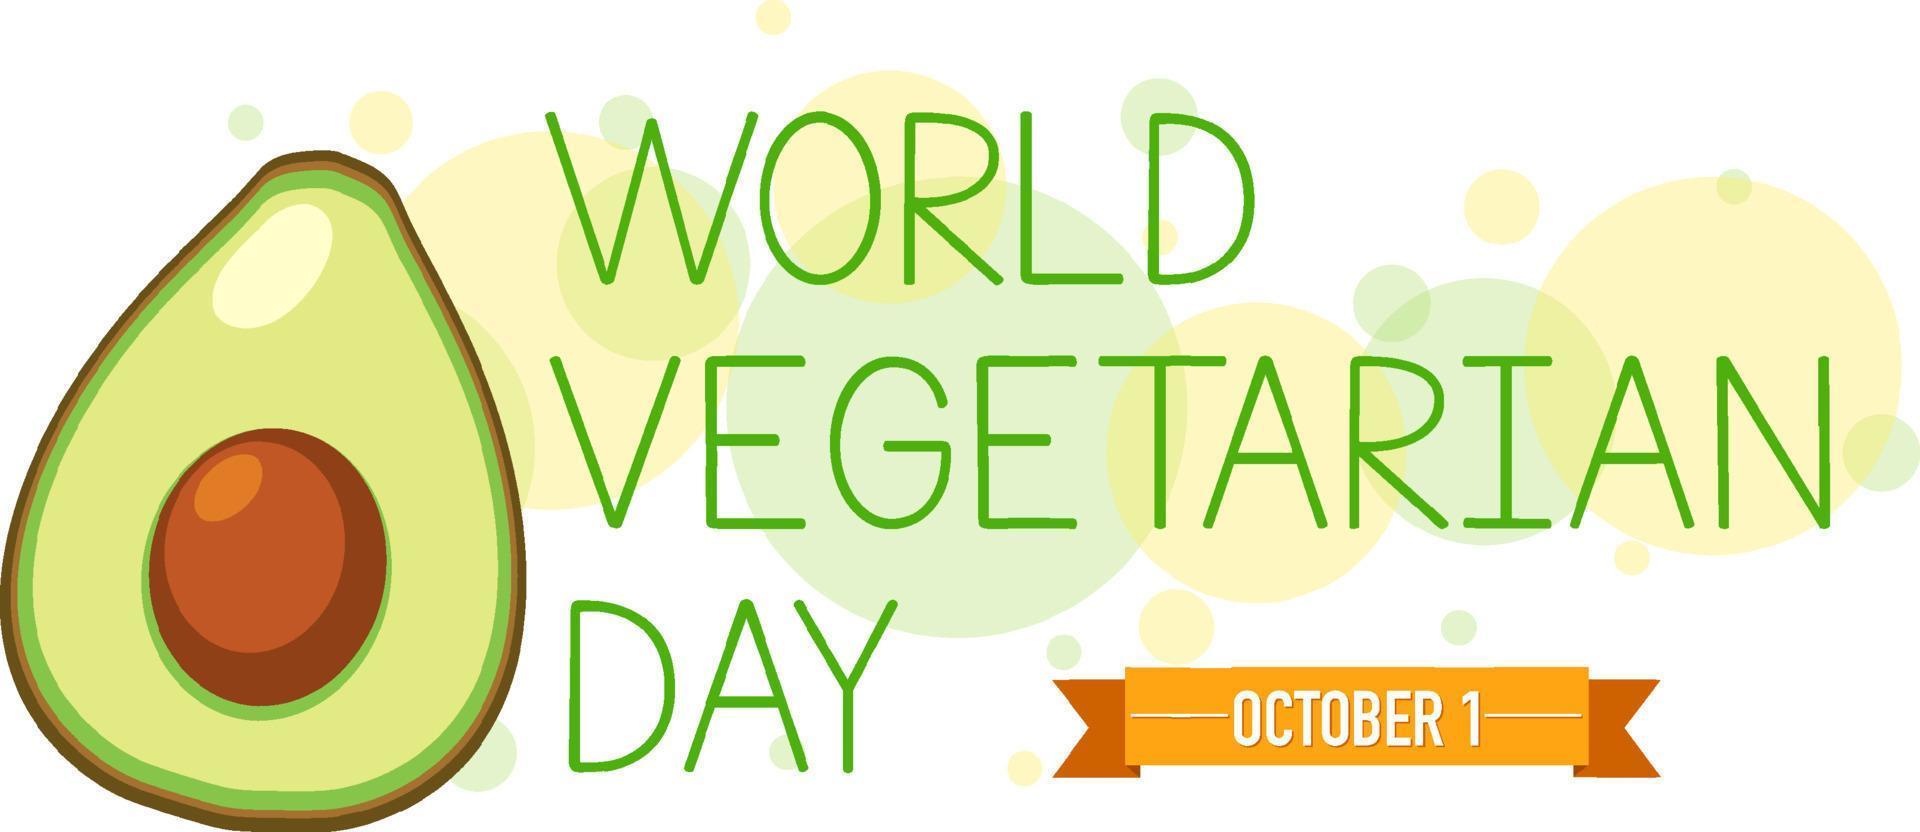 poster della giornata mondiale della verdura con un avocado vettore